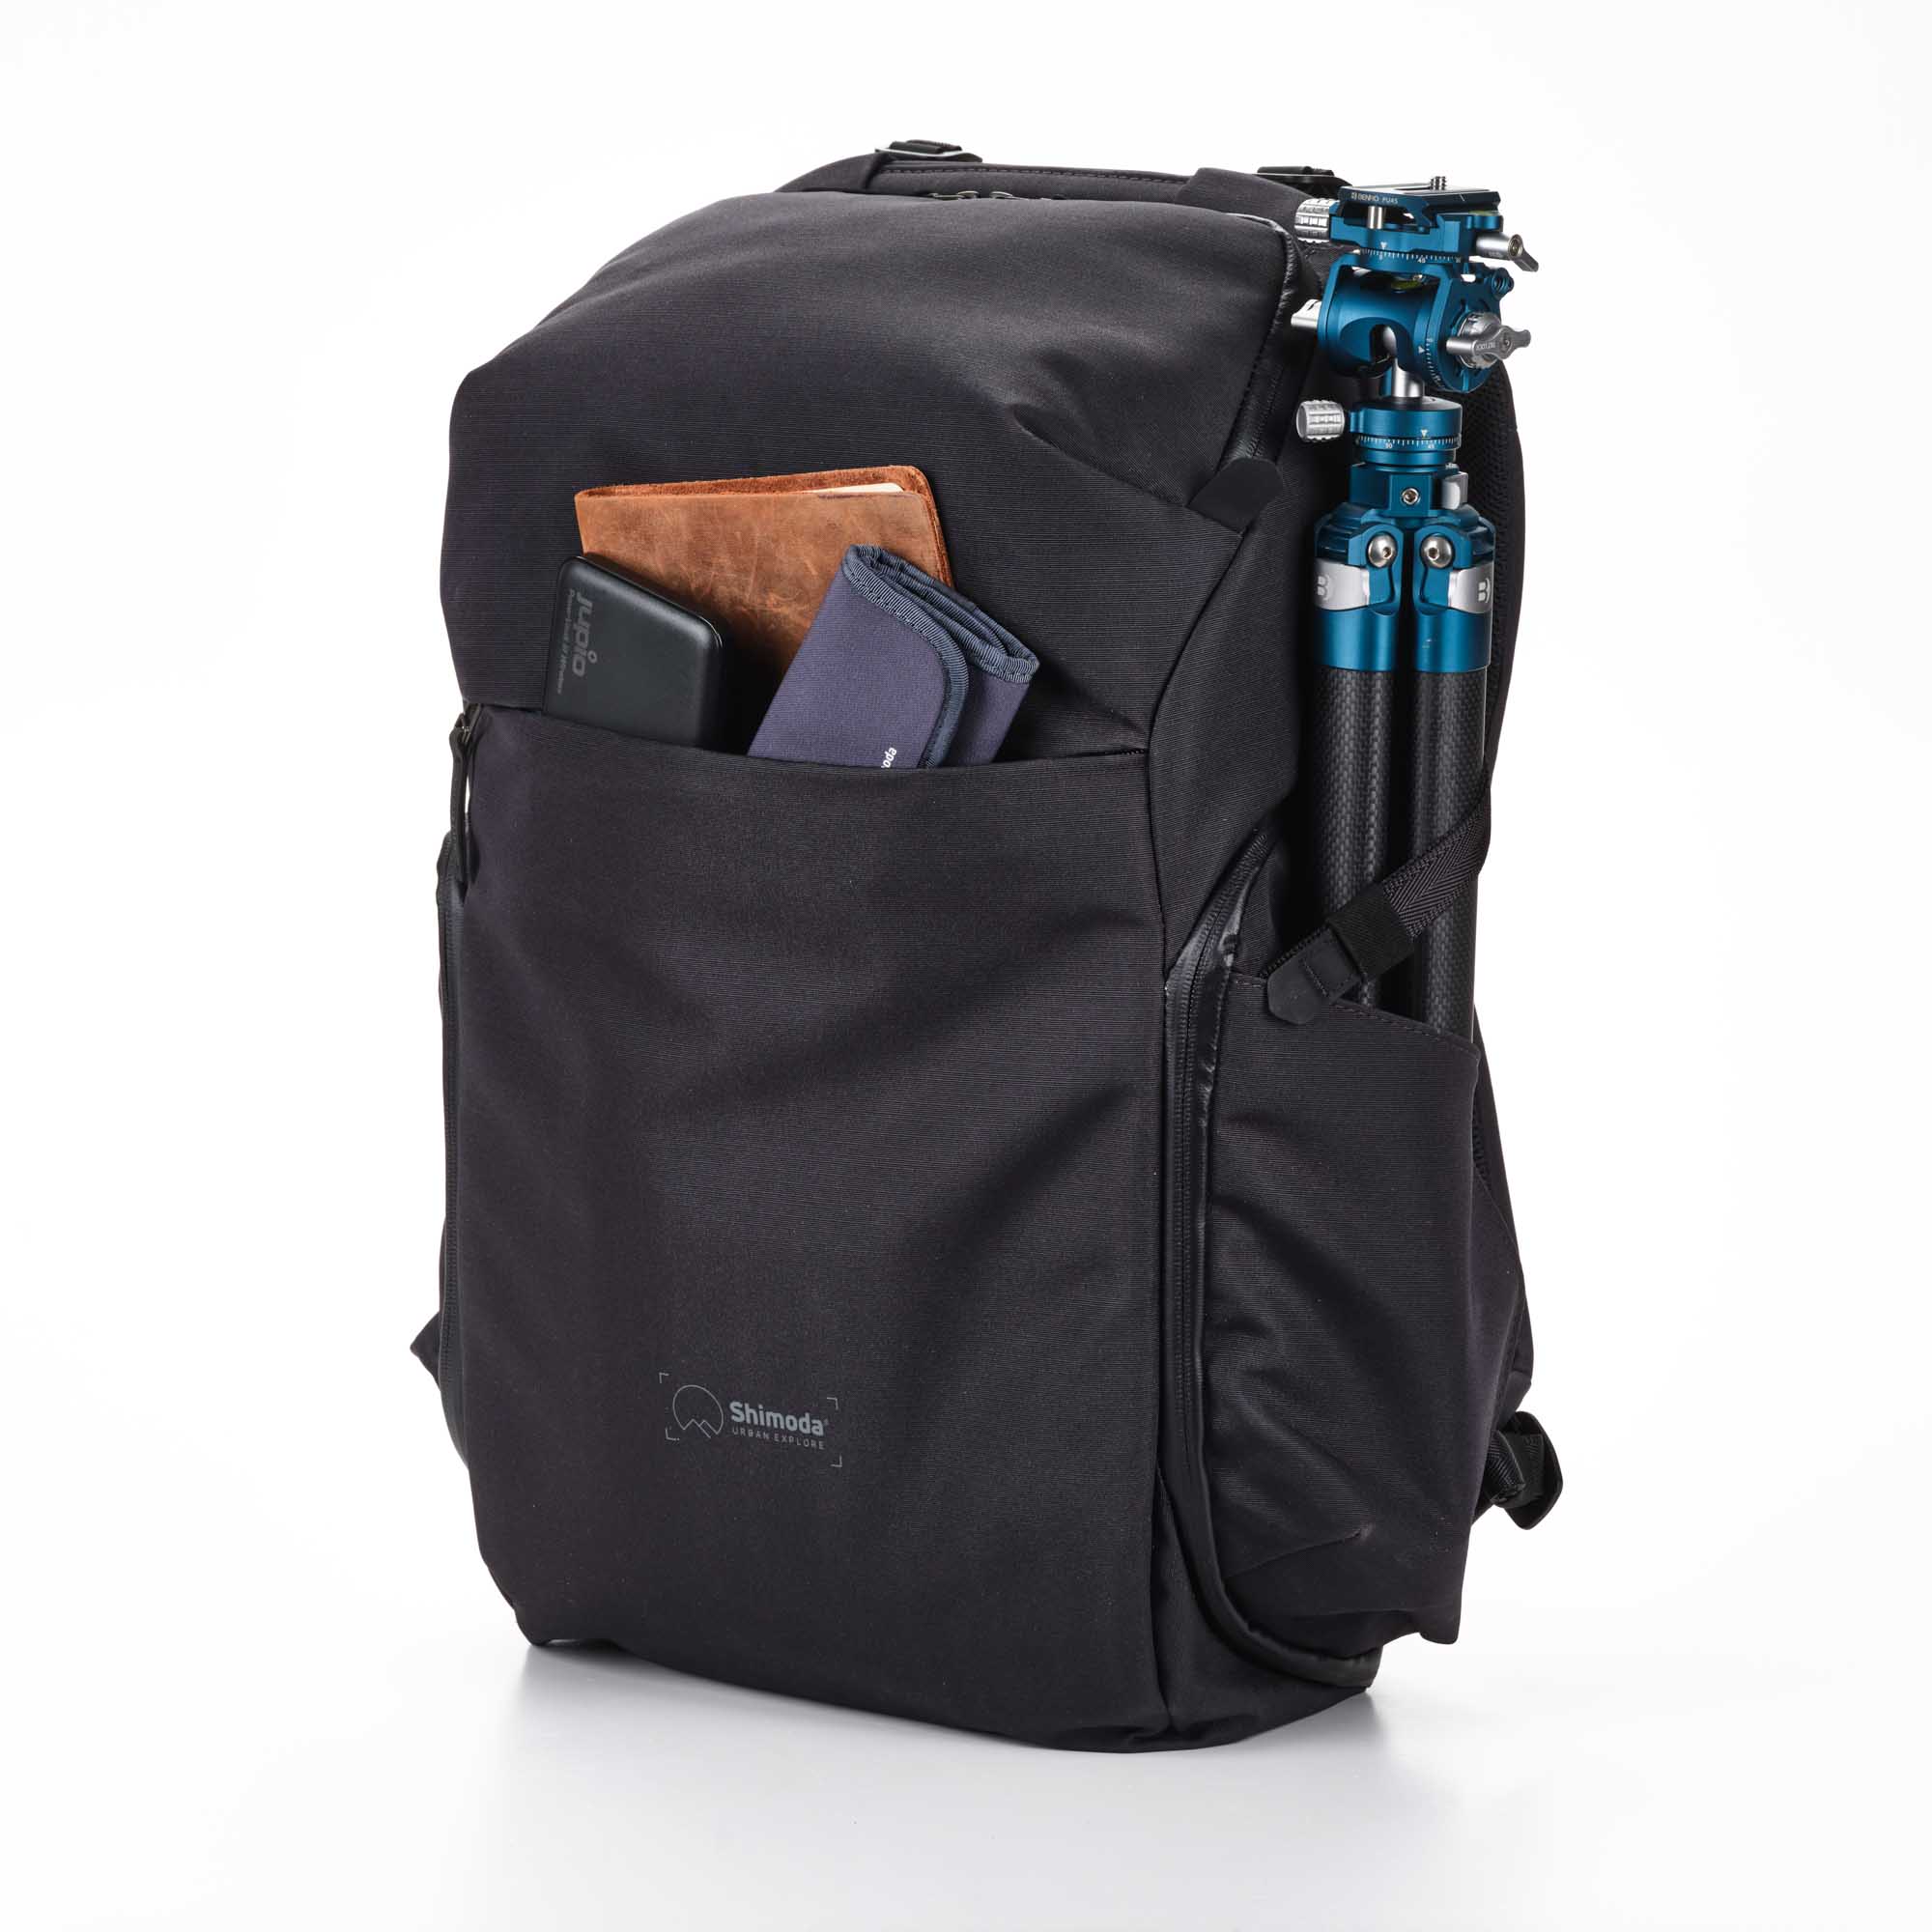 Shimoda Designs Explore 30 Rucksack in Anthrazit, Frontal rehcts mit Inhalt in Fronttasche und Stativ in Seitentasche